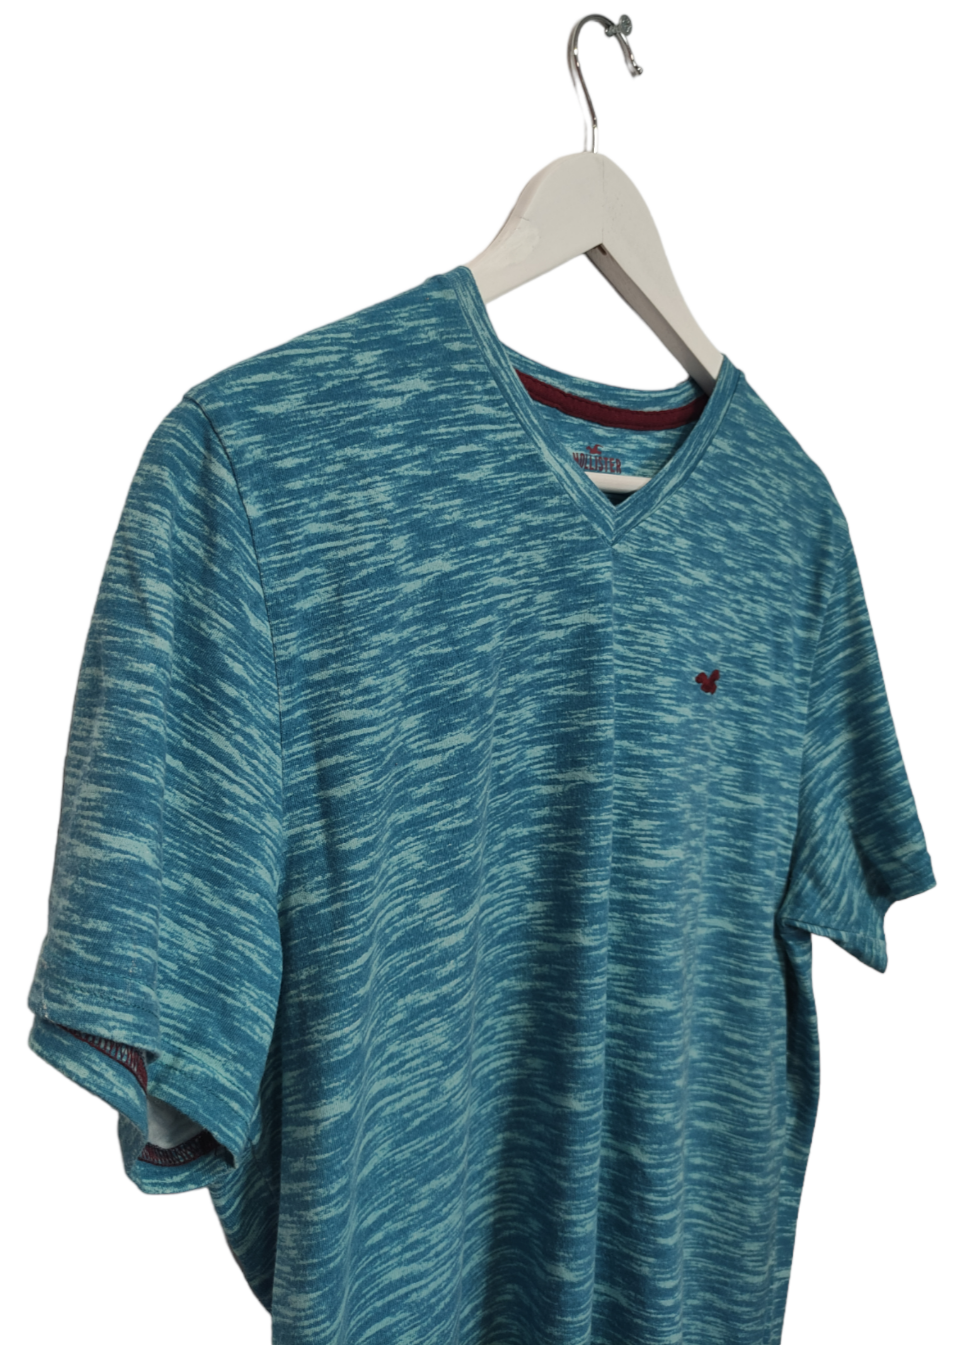 Ανδρική Μπλούζα - T- Shirt HOLLISTER  σε Γαλάζιο Χρώμα (XL)